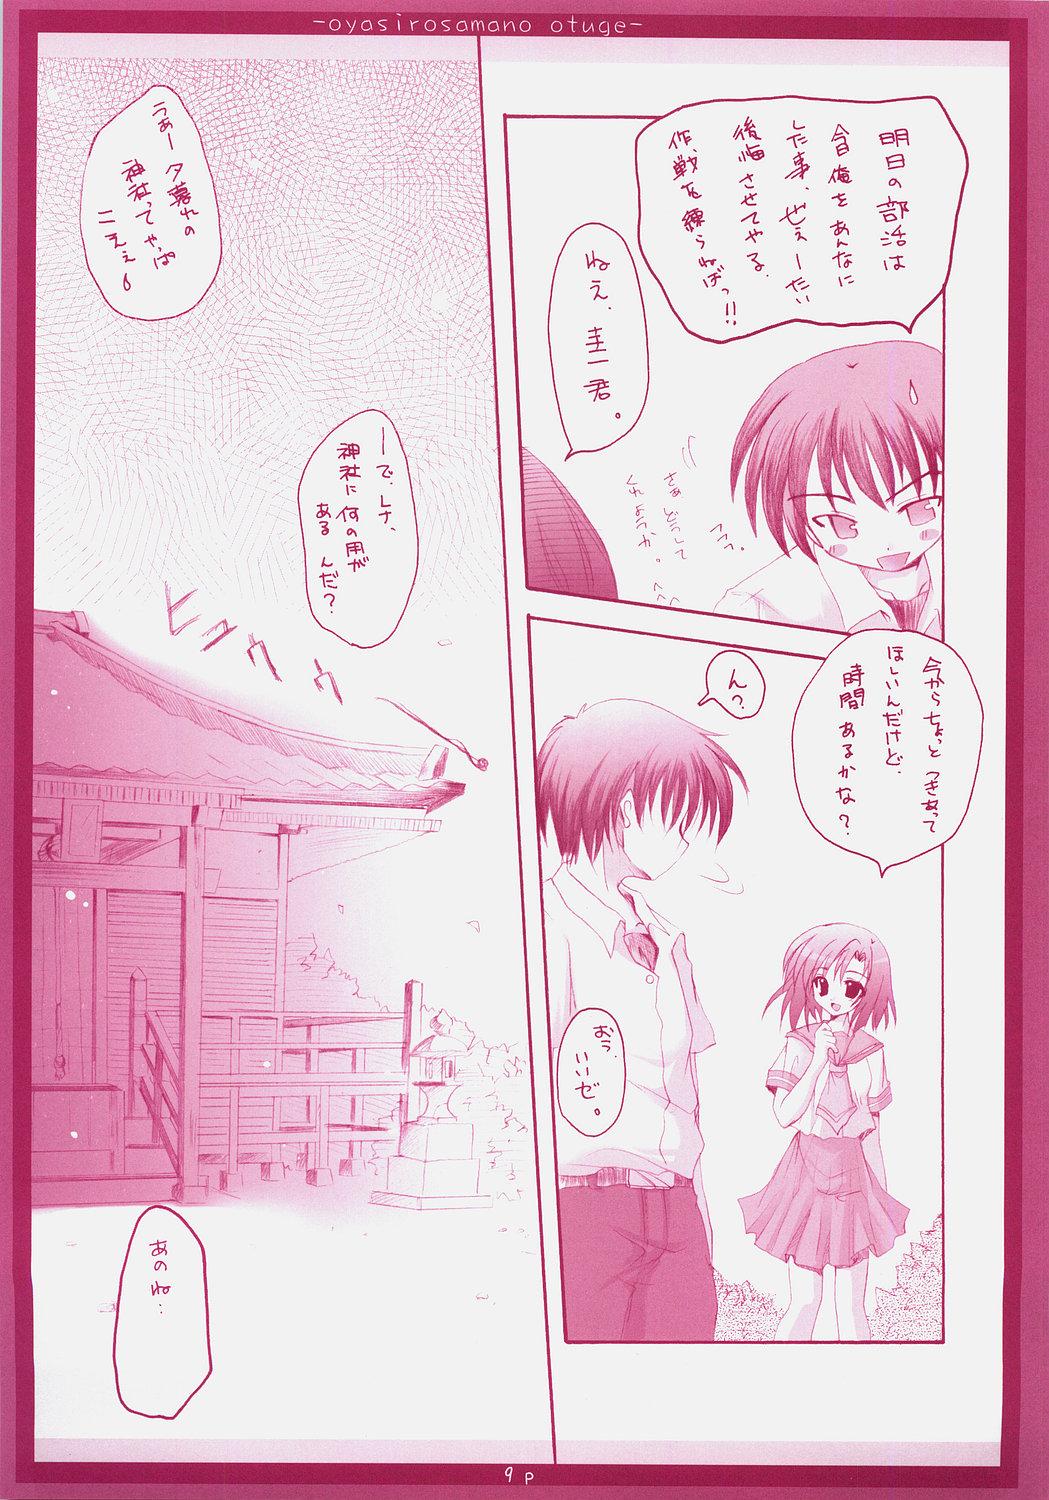 Bigtits Oyashiro-sama no Otuge - Higurashi no naku koro ni Hot Naked Girl - Page 8